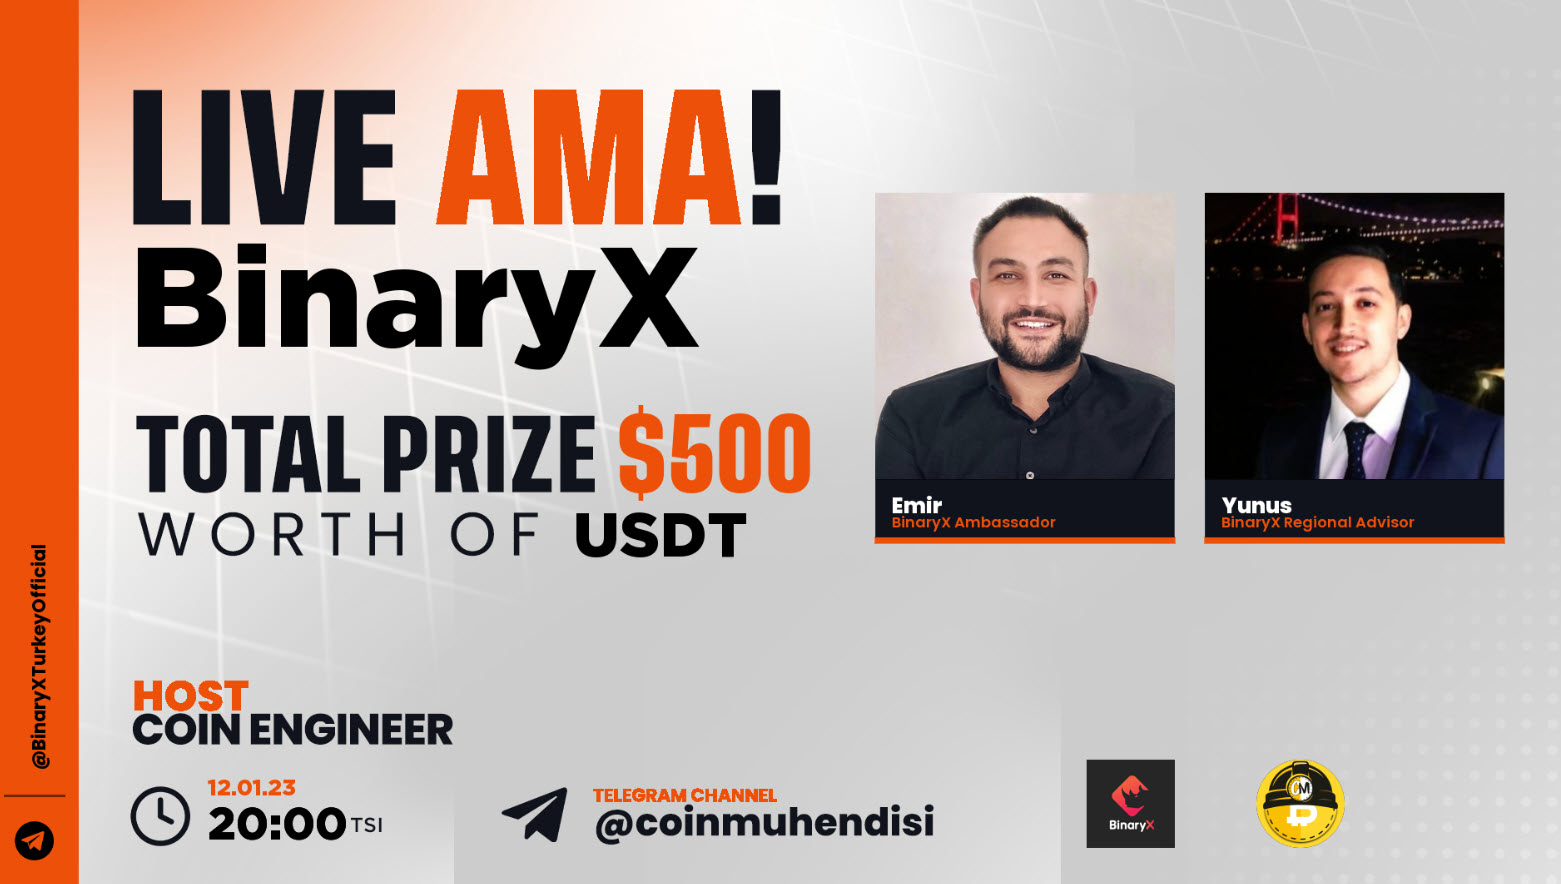 Ödüllü #BinaryX ile #AMA etkinliği düzenliyoruz // @coinmuhendisim